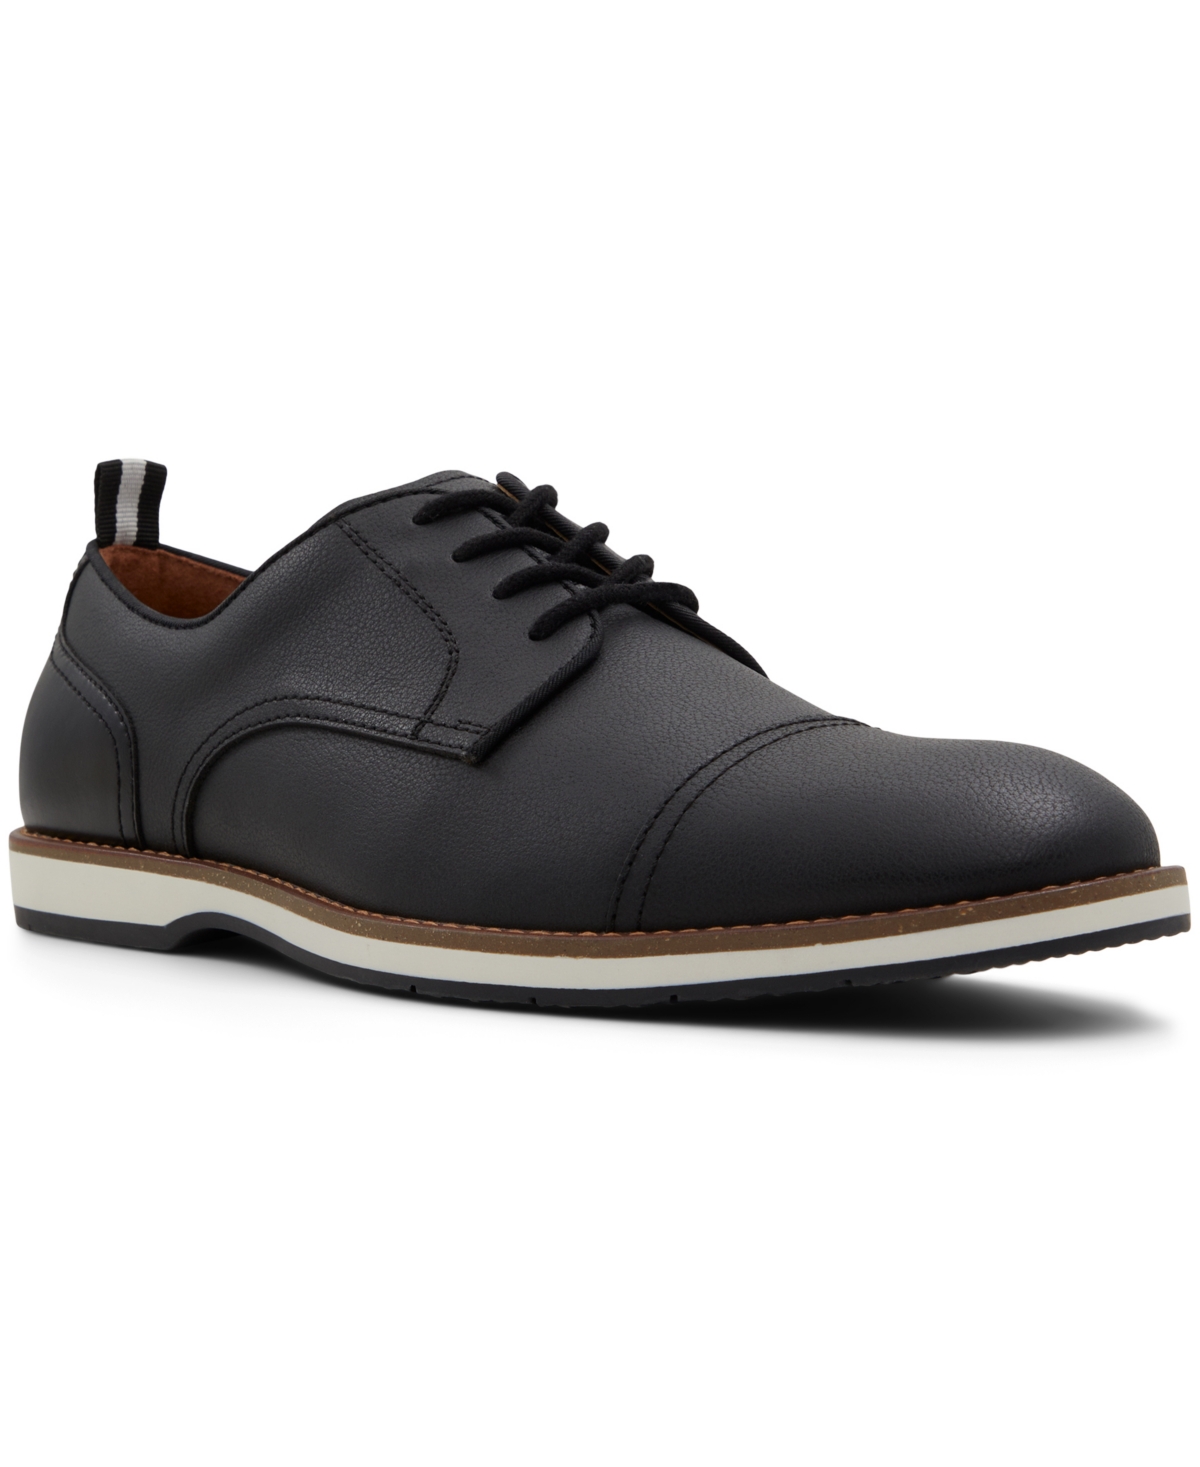 Men's Castelo Derby Lace-Up Shoes - Black